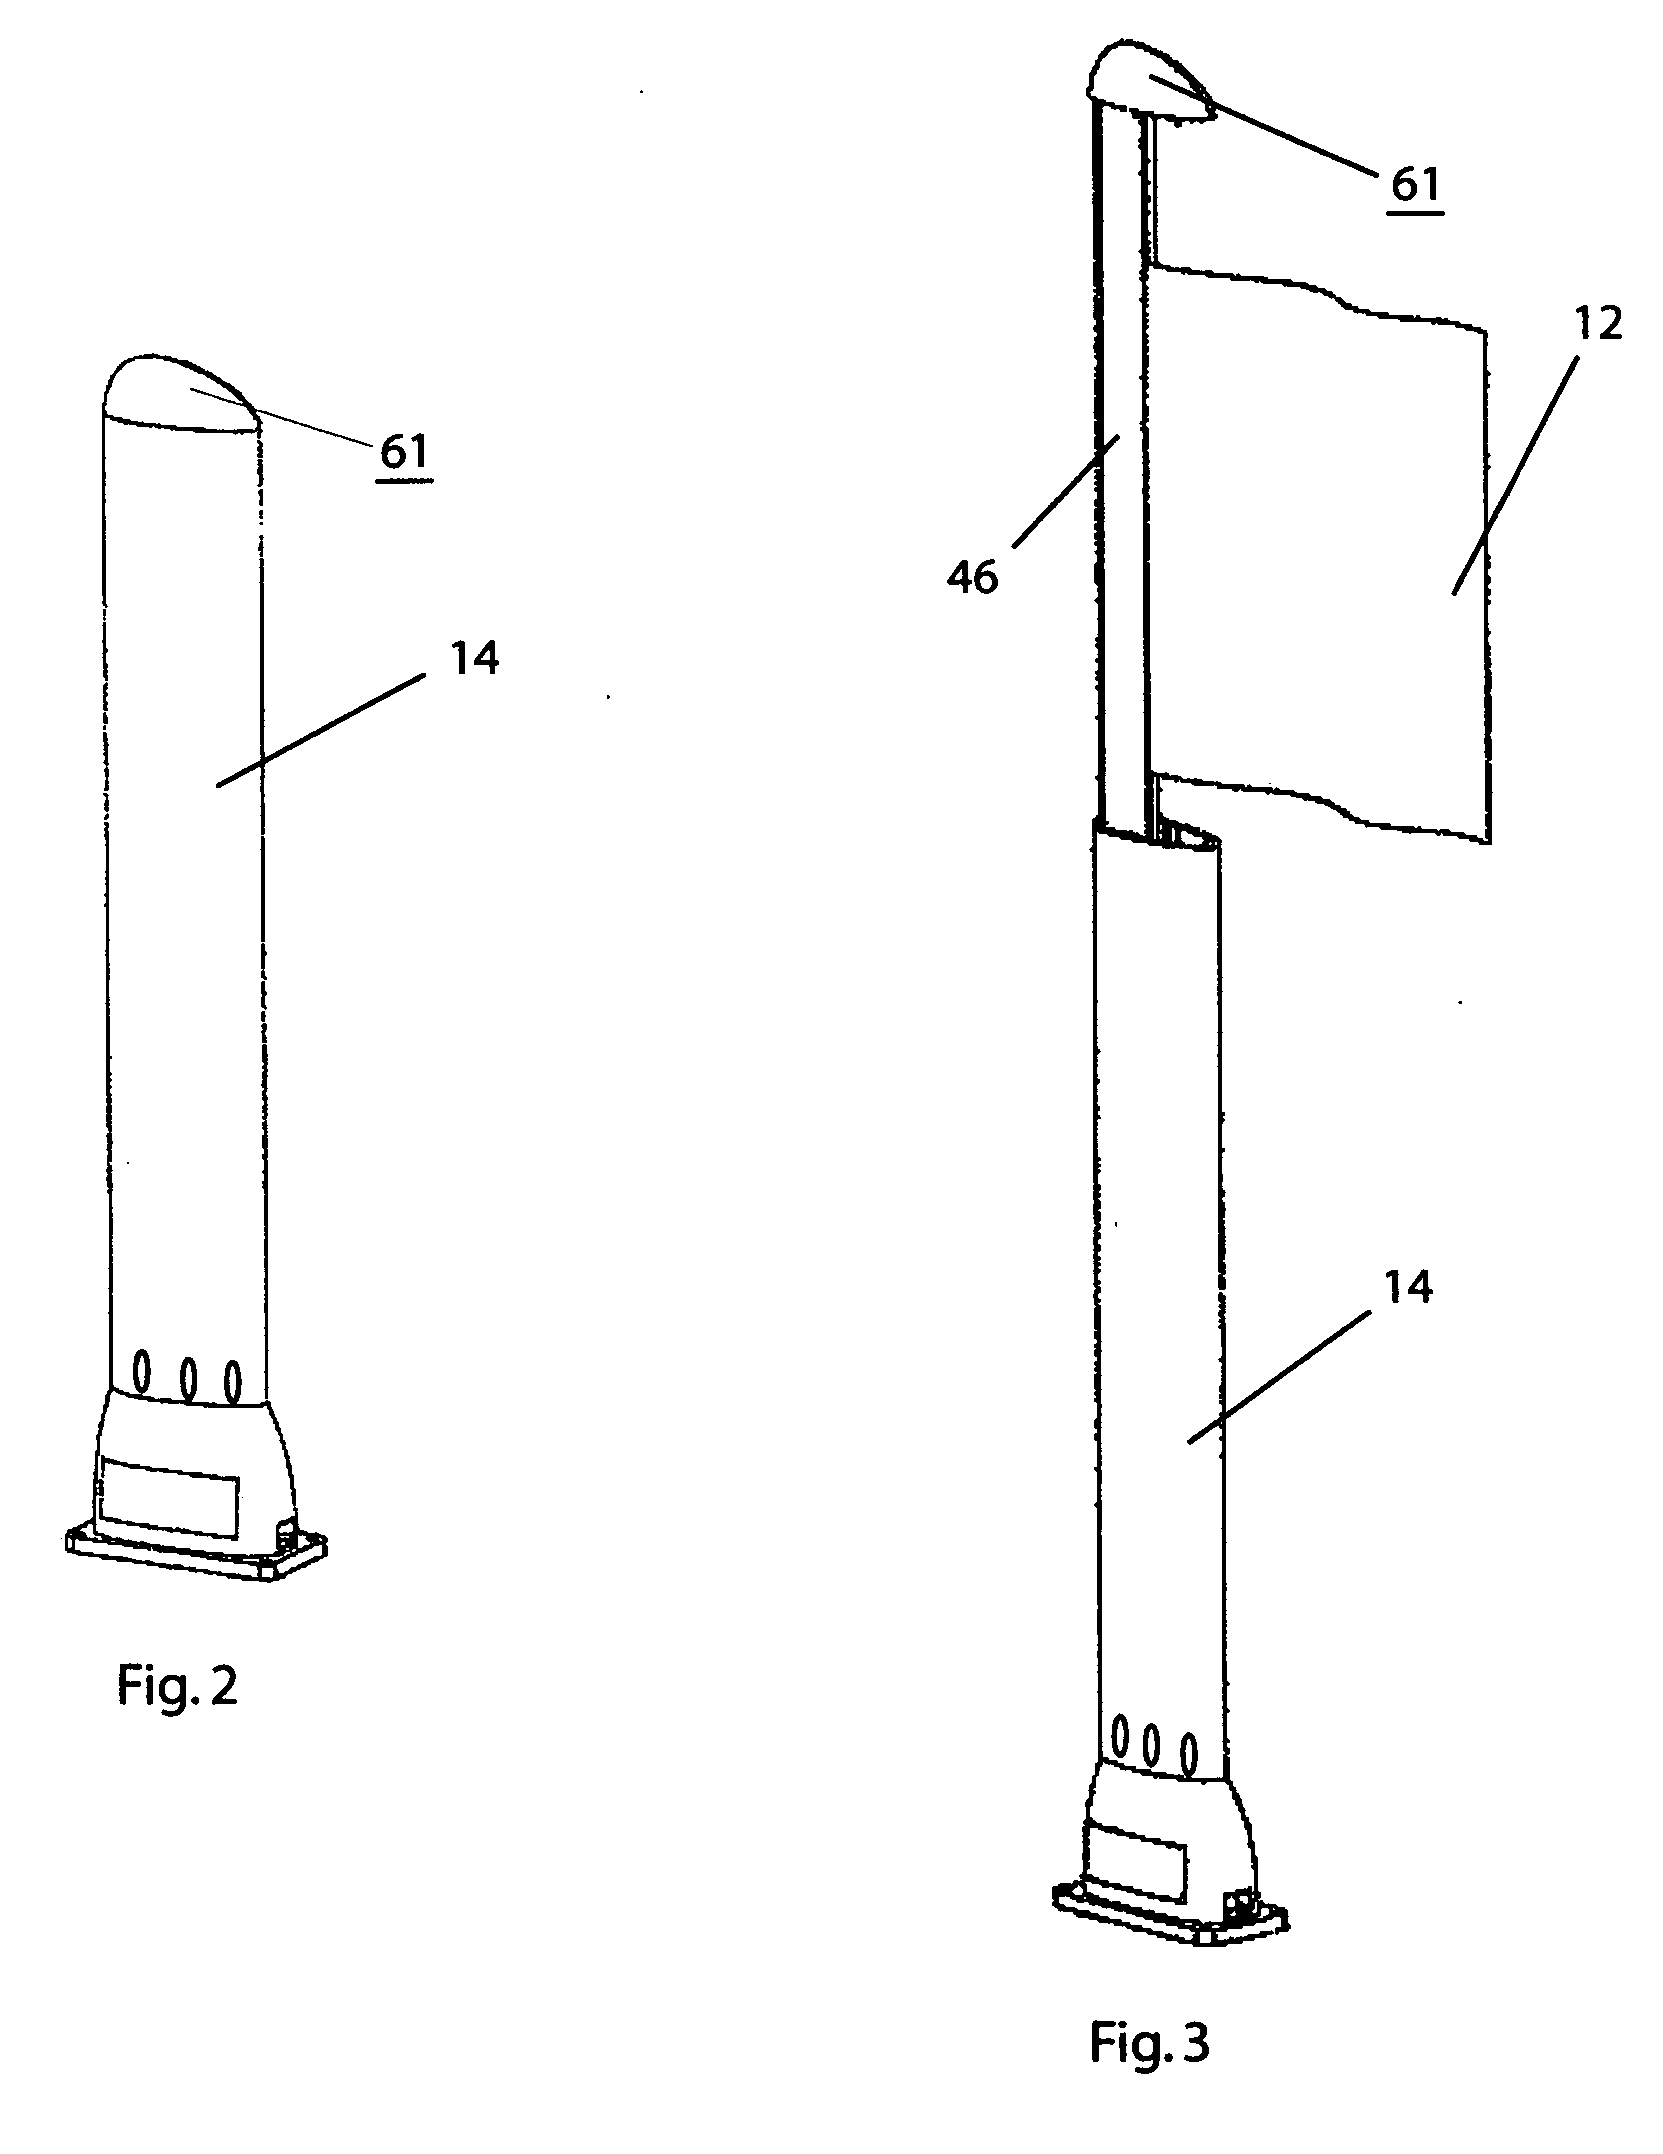 Semaphore apparatus